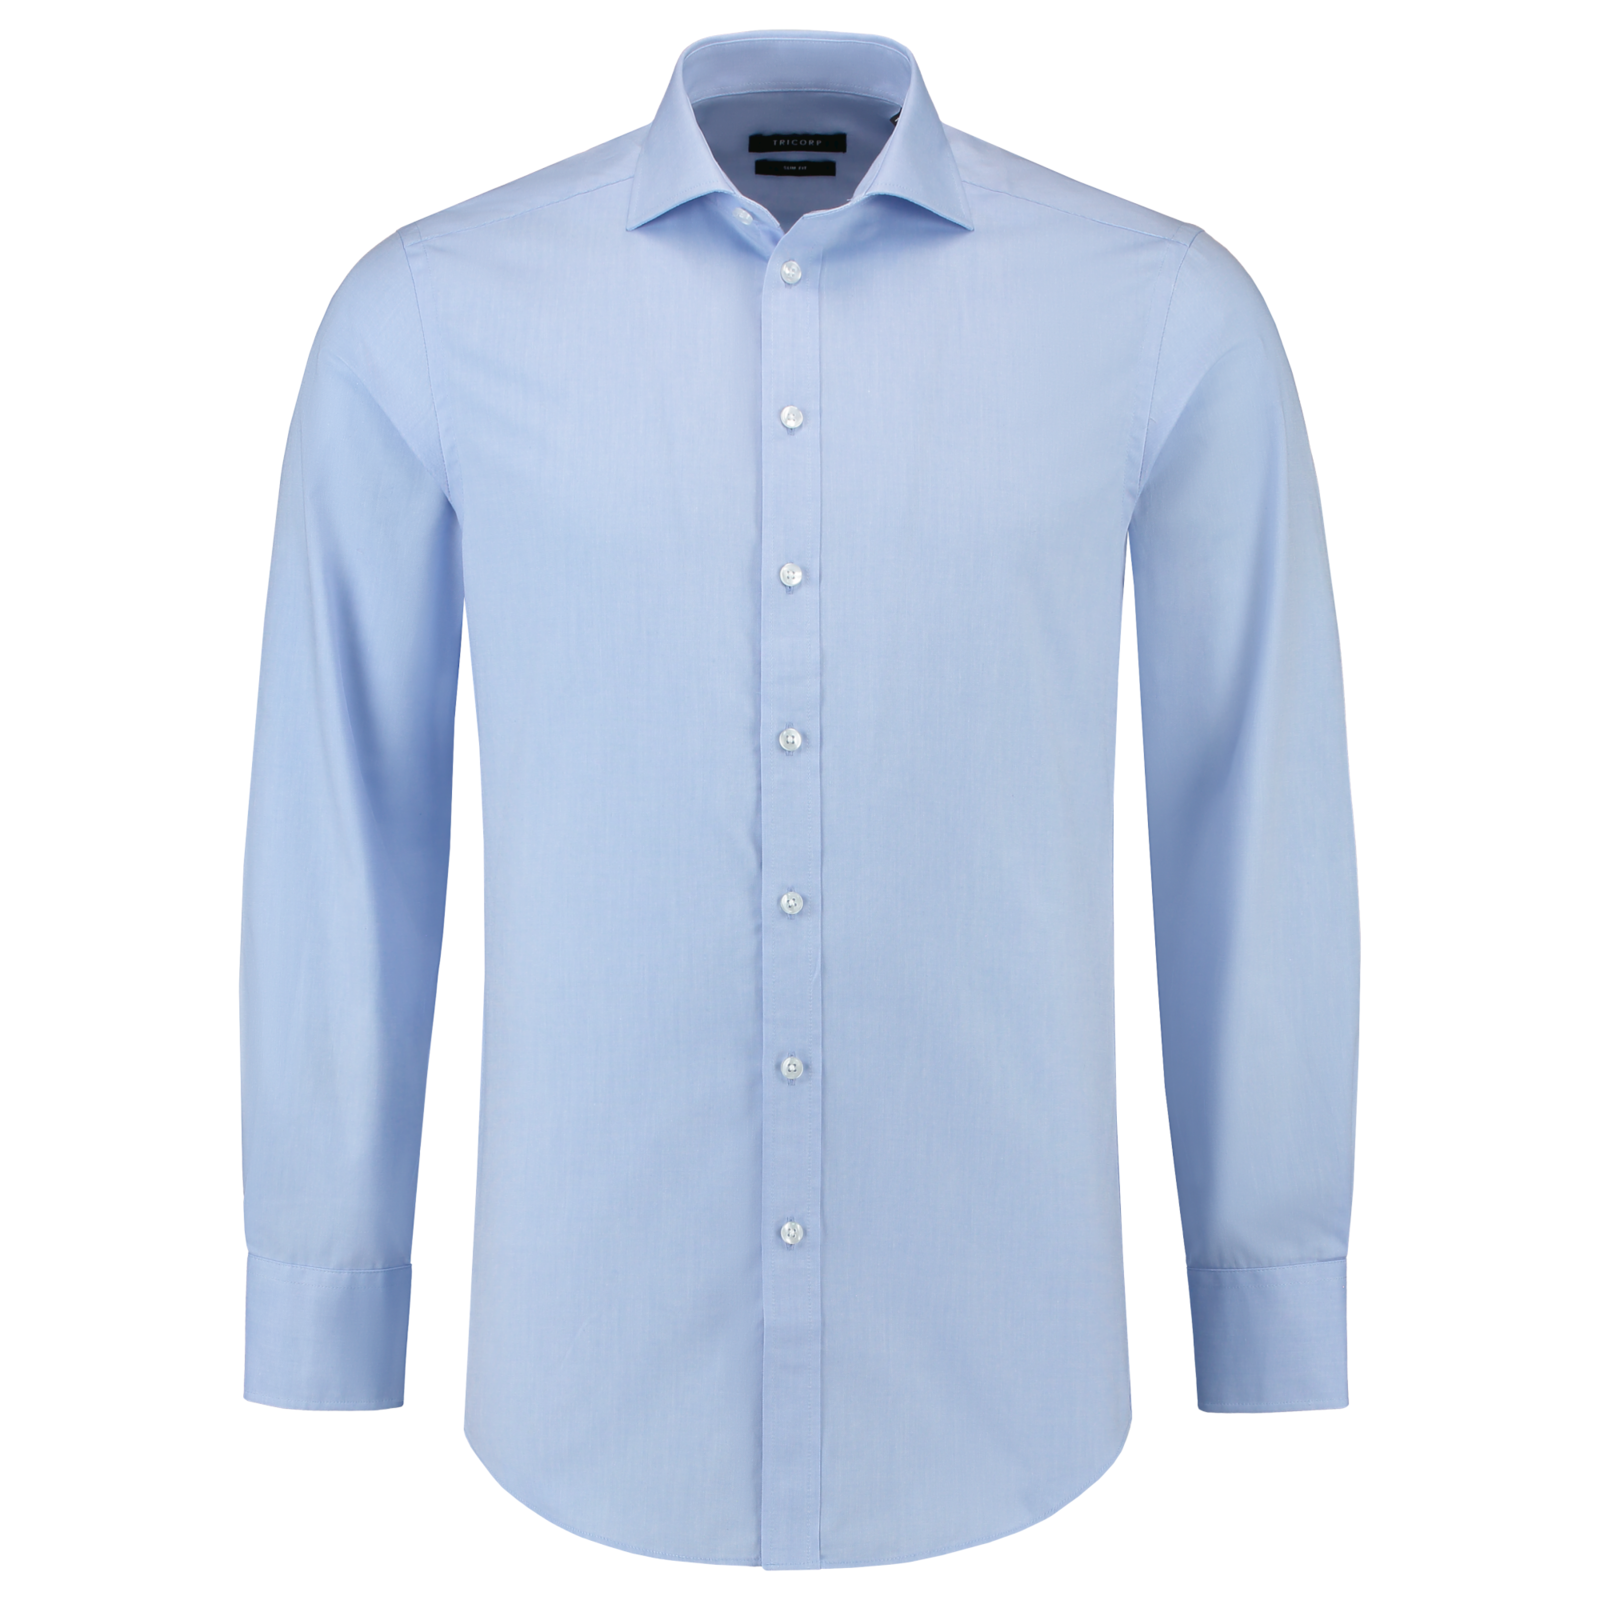 Pánska košeľa s dlhým rukávom Tricorp Fitted Stretch T23 - veľkosť: 45, farba: svetlo modrá